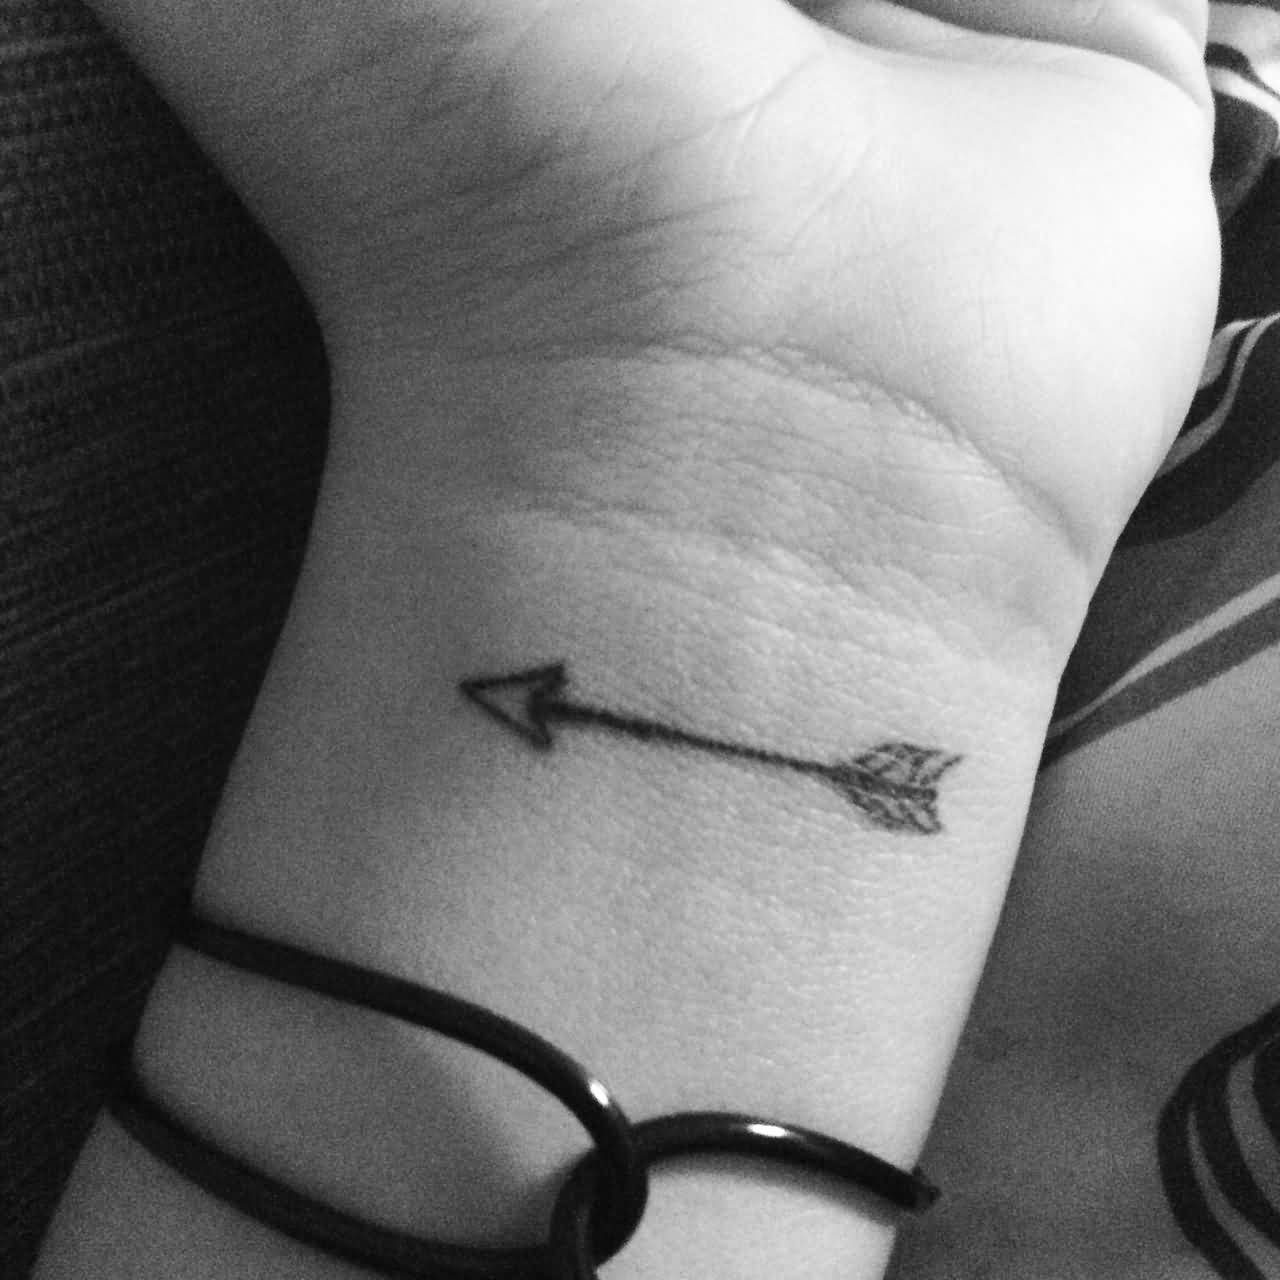 Small Arrow In Black Ink Tattoo On Wrist